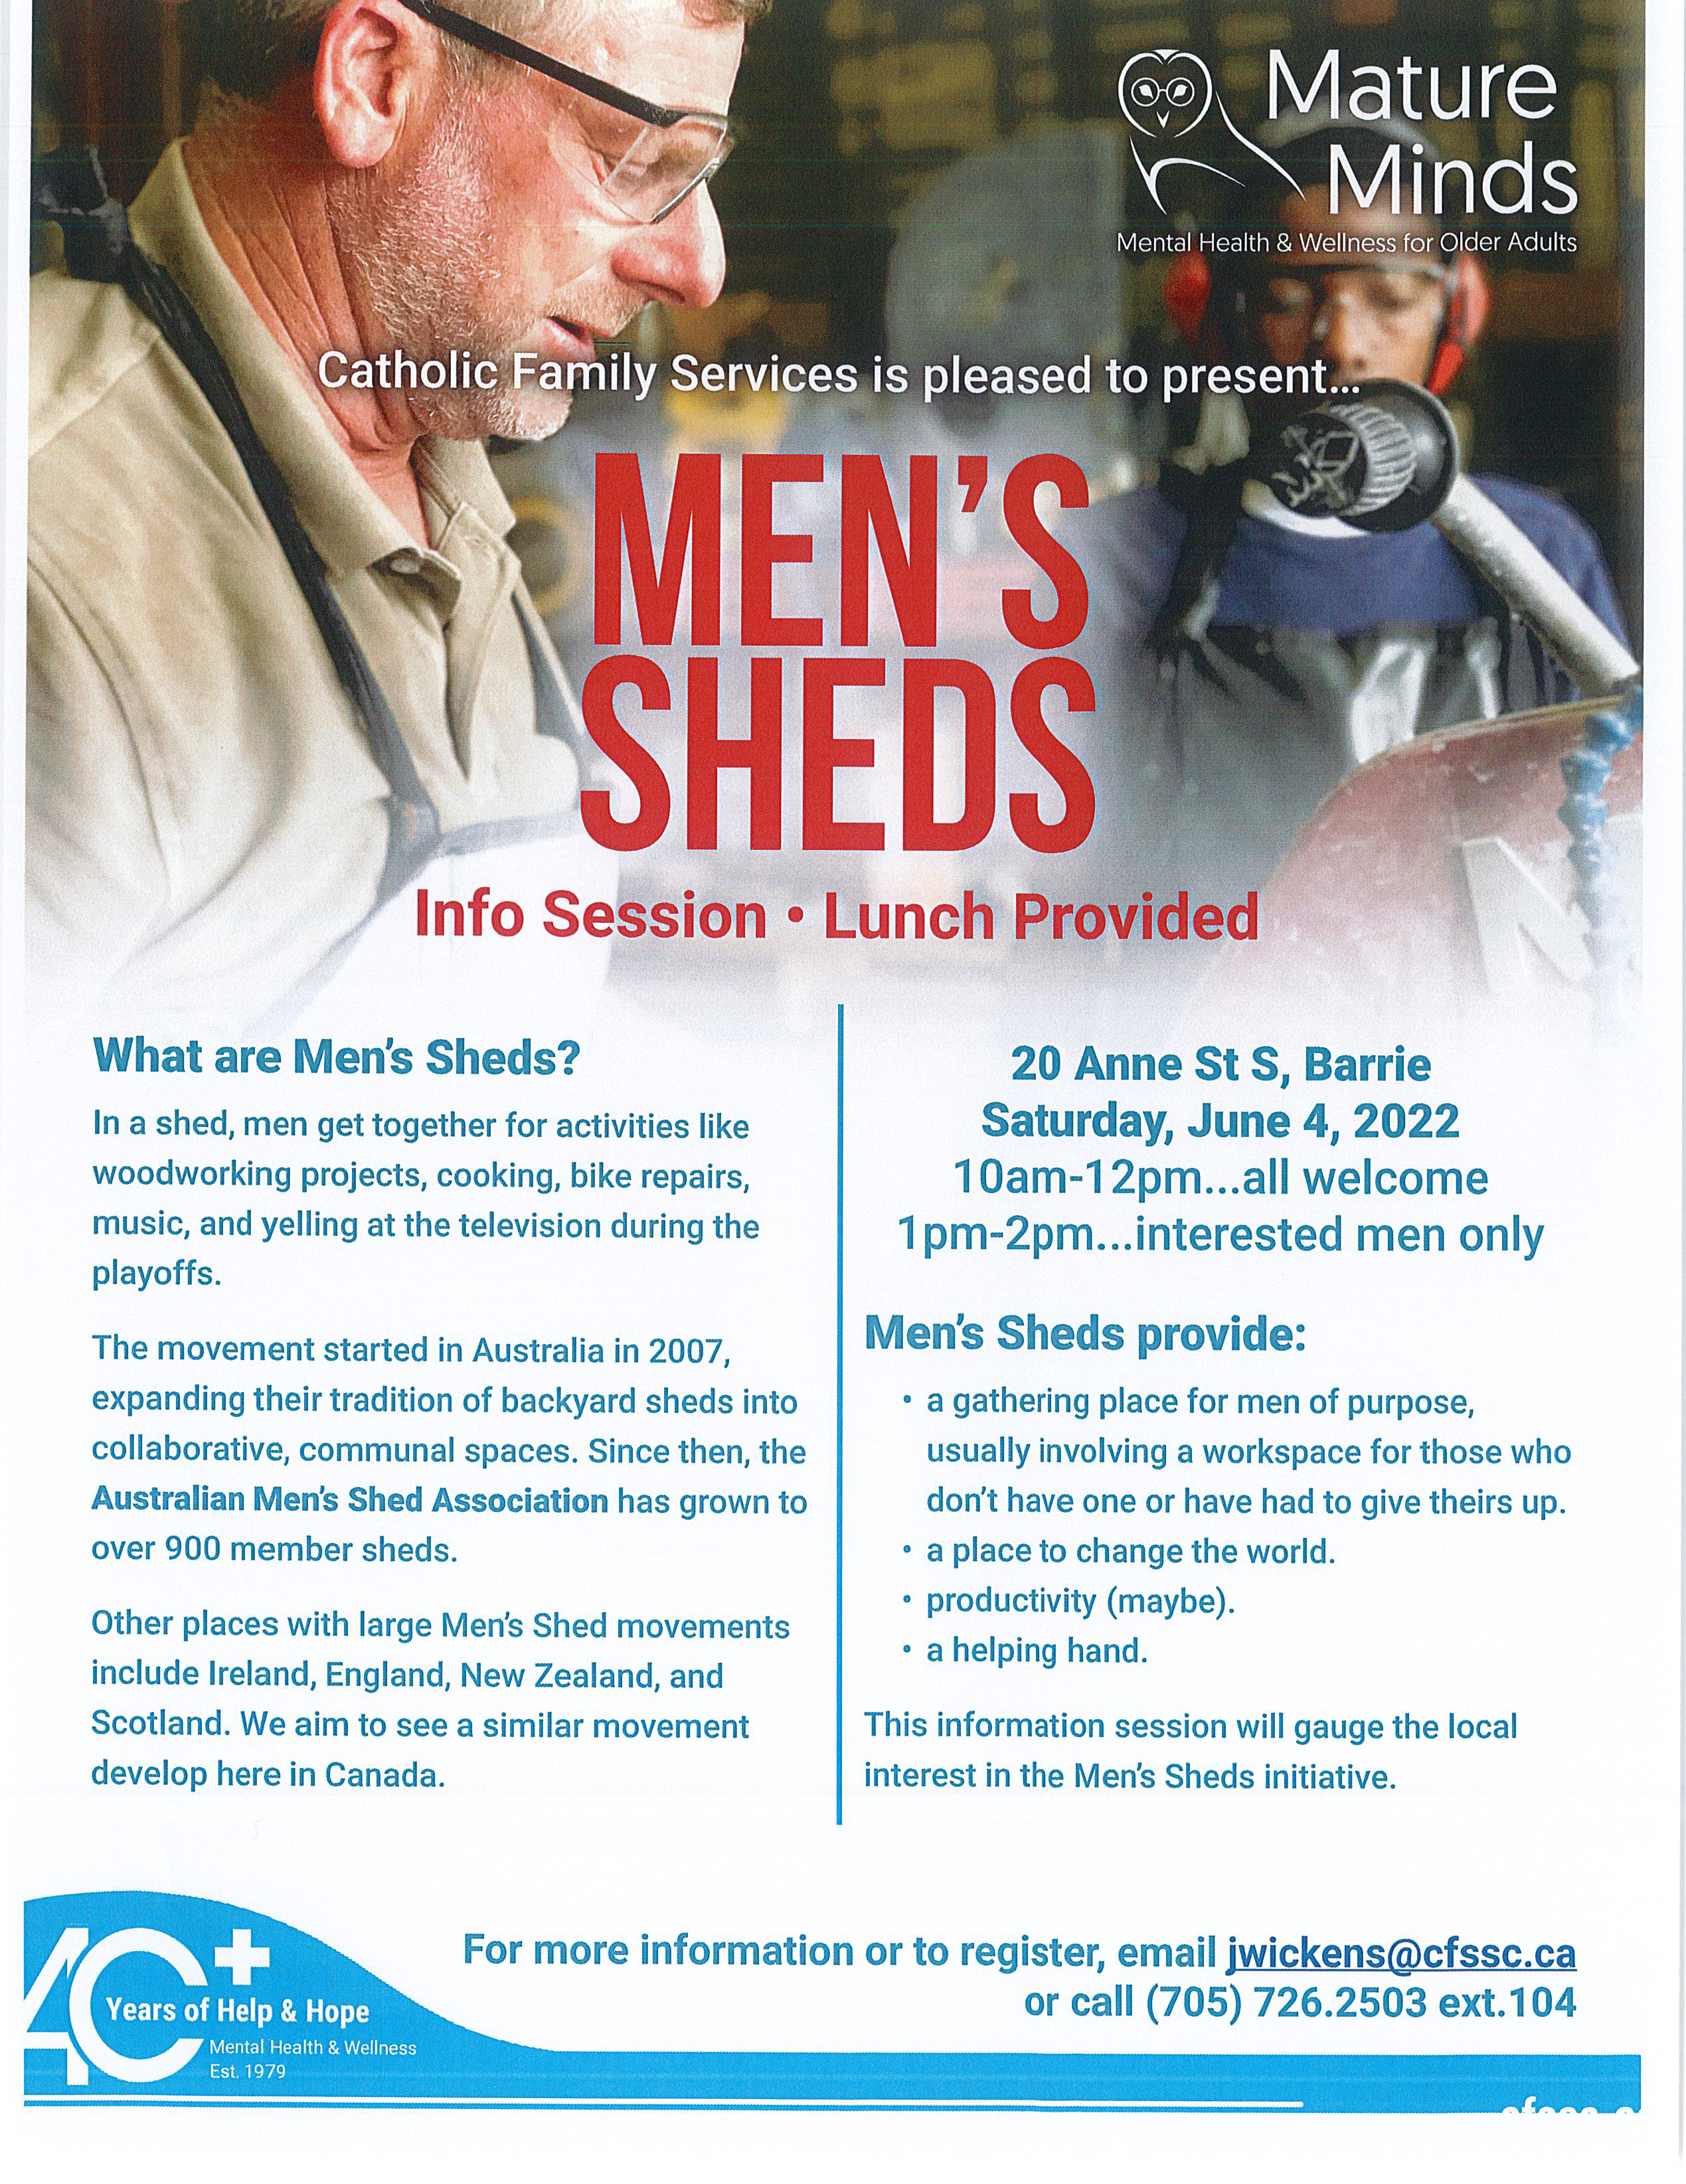 Men's Sheds